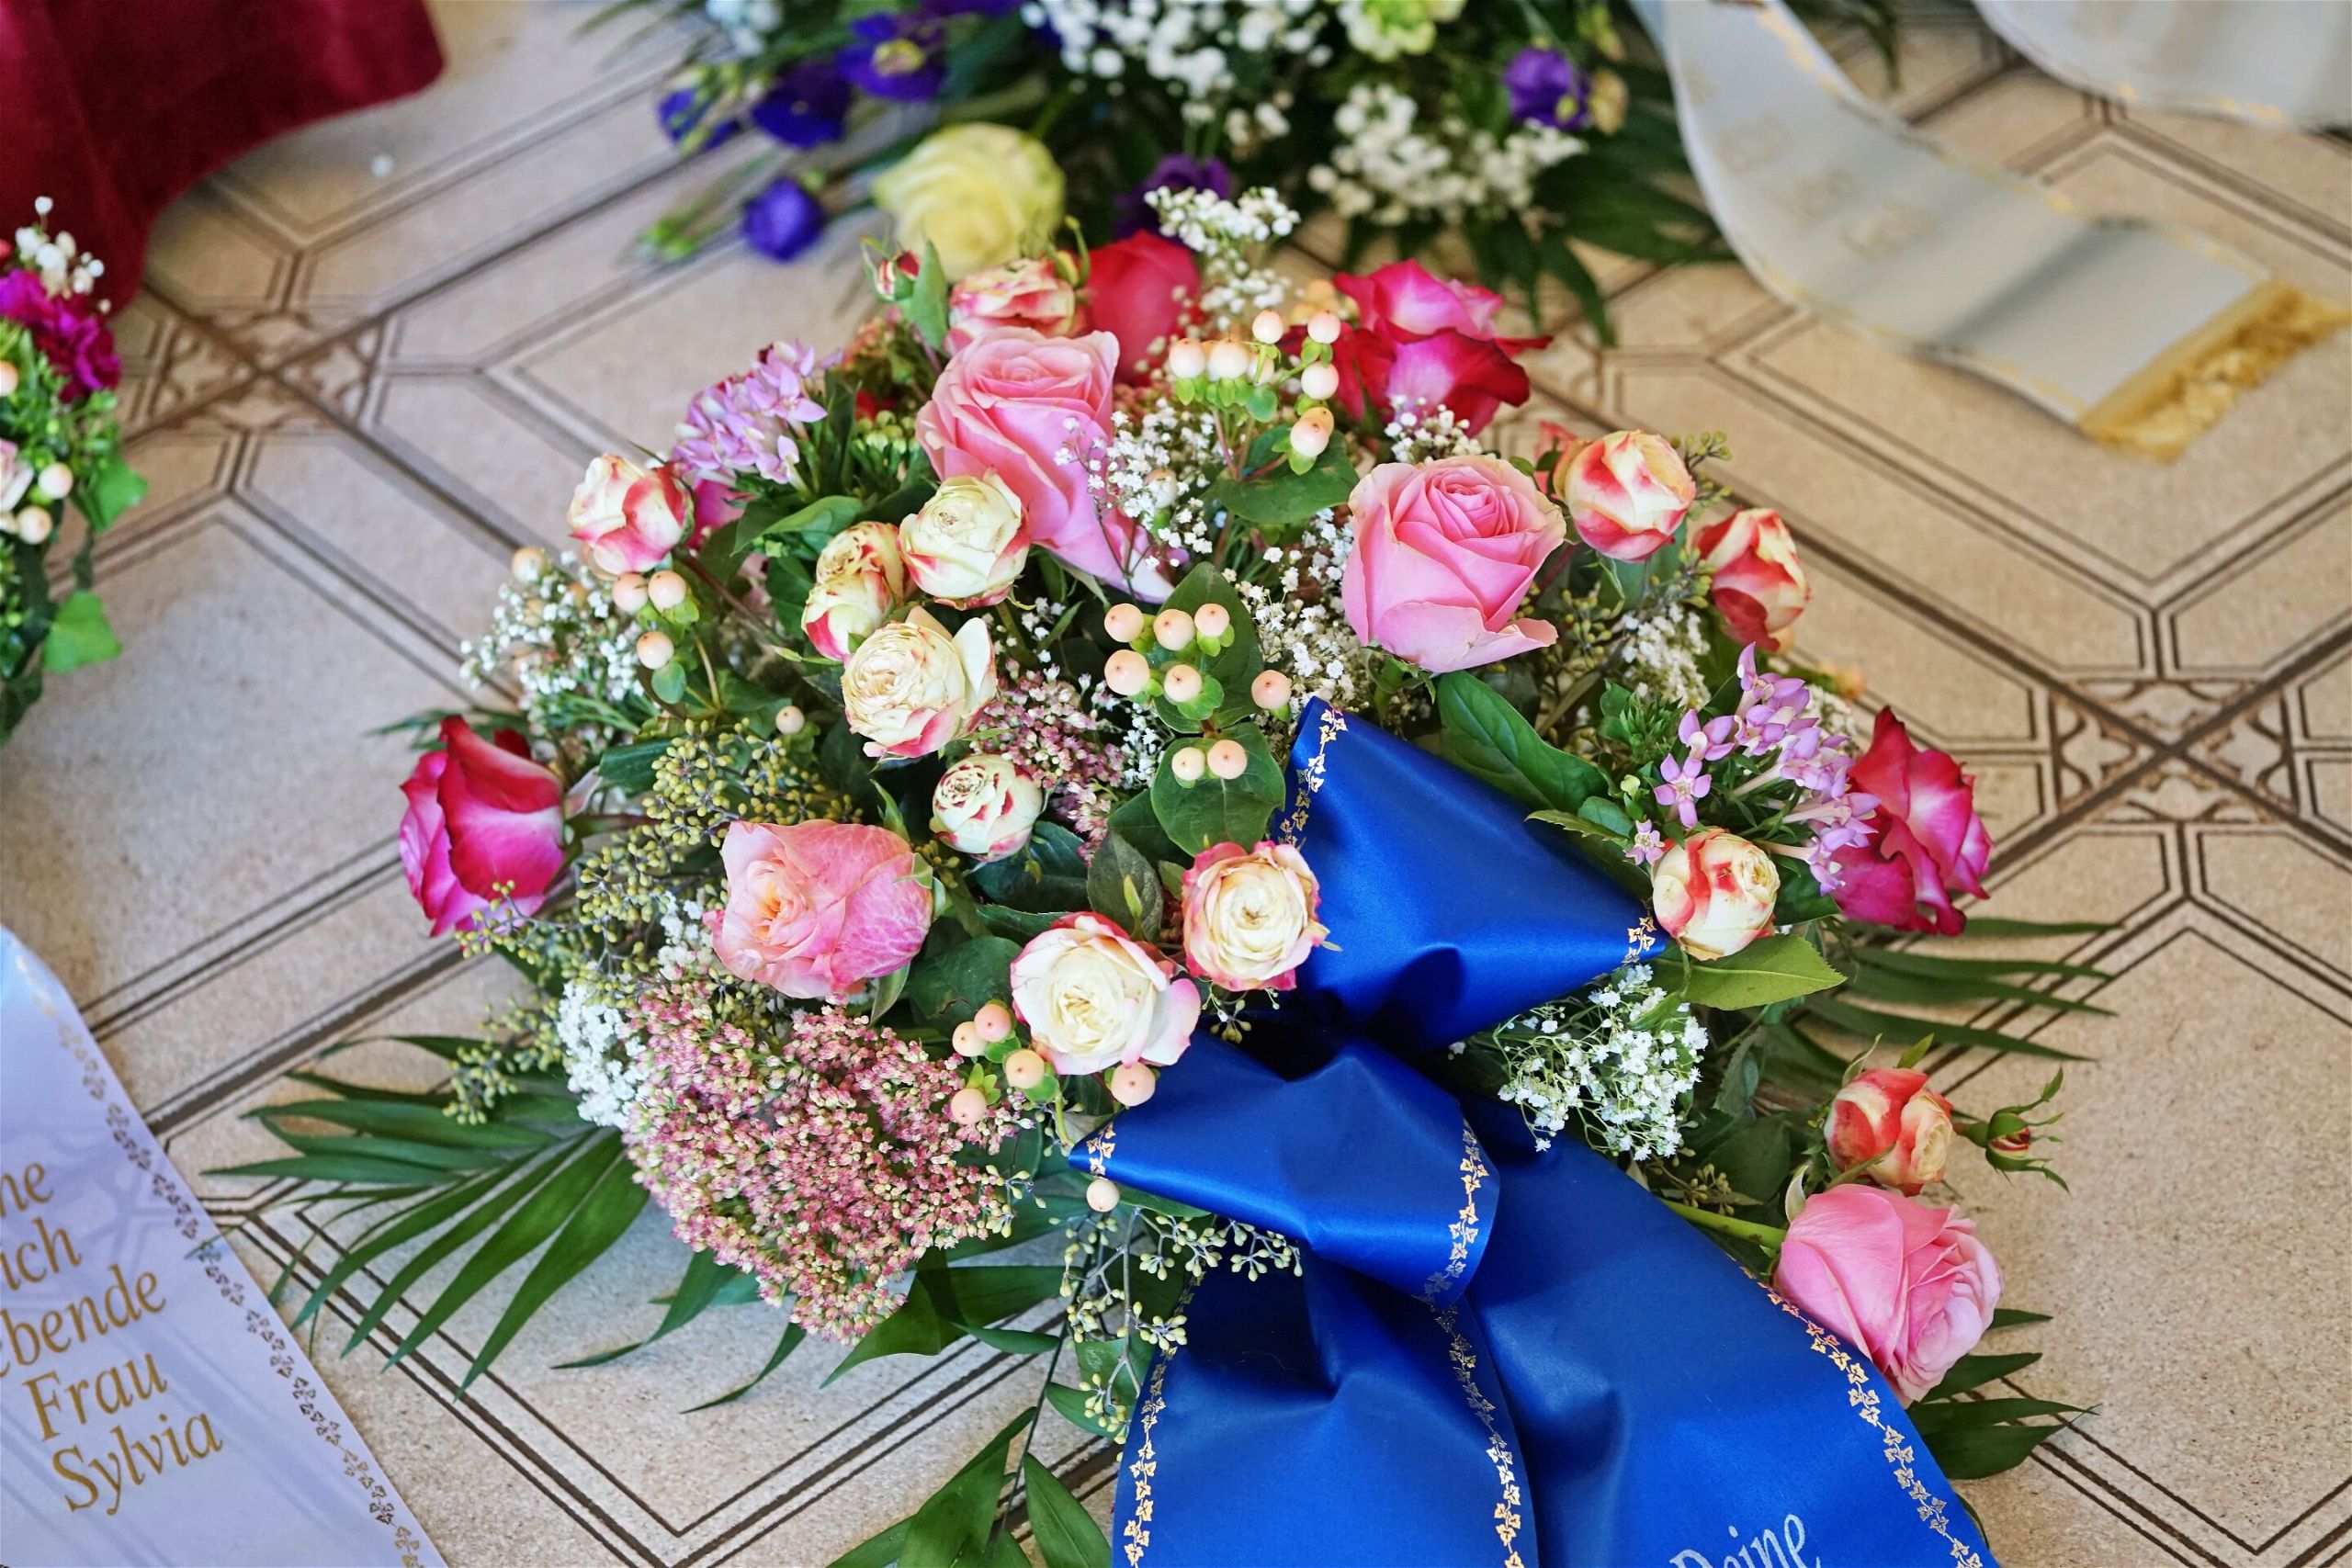 fleurs pour un enterrement